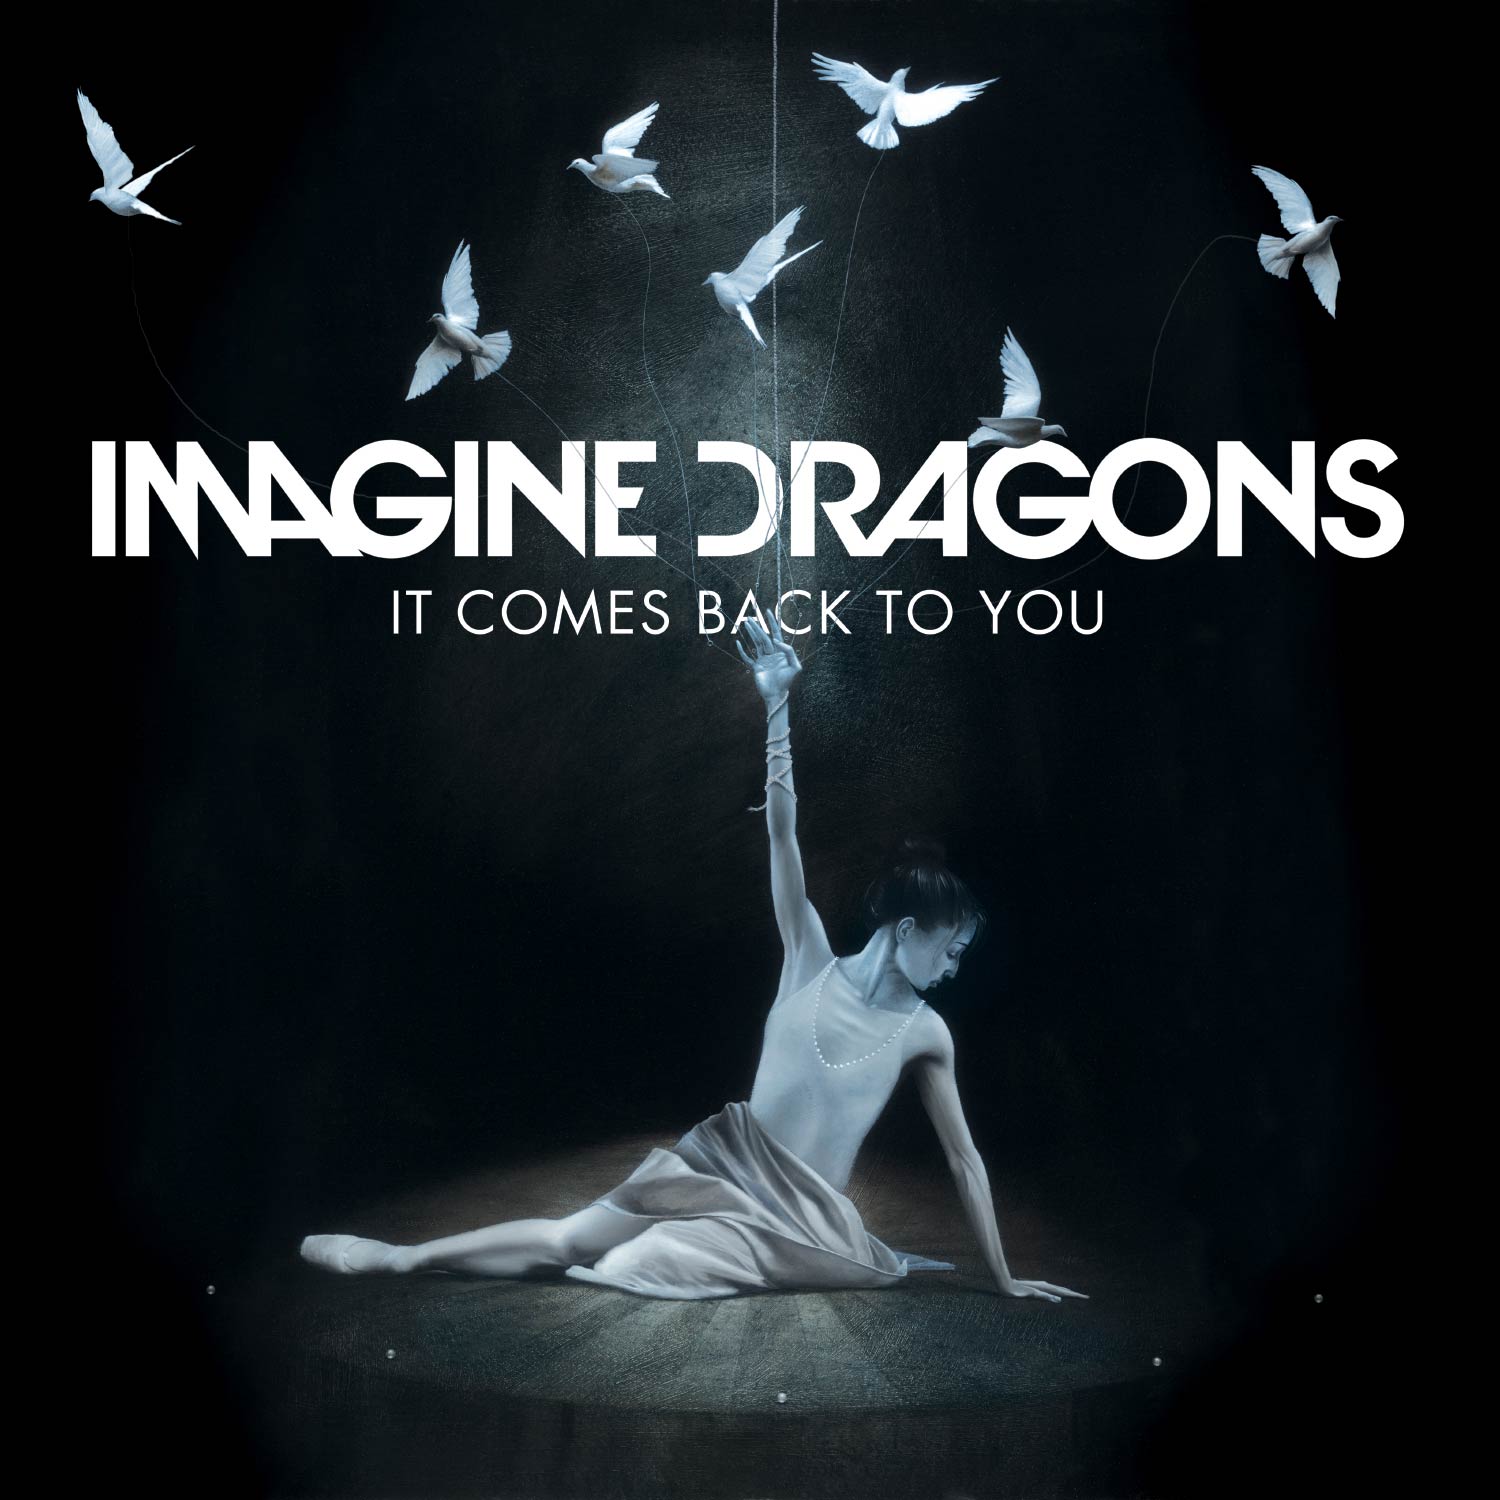 Imagine Dragons: It comes back to you, la portada de la canción1500 x 1500